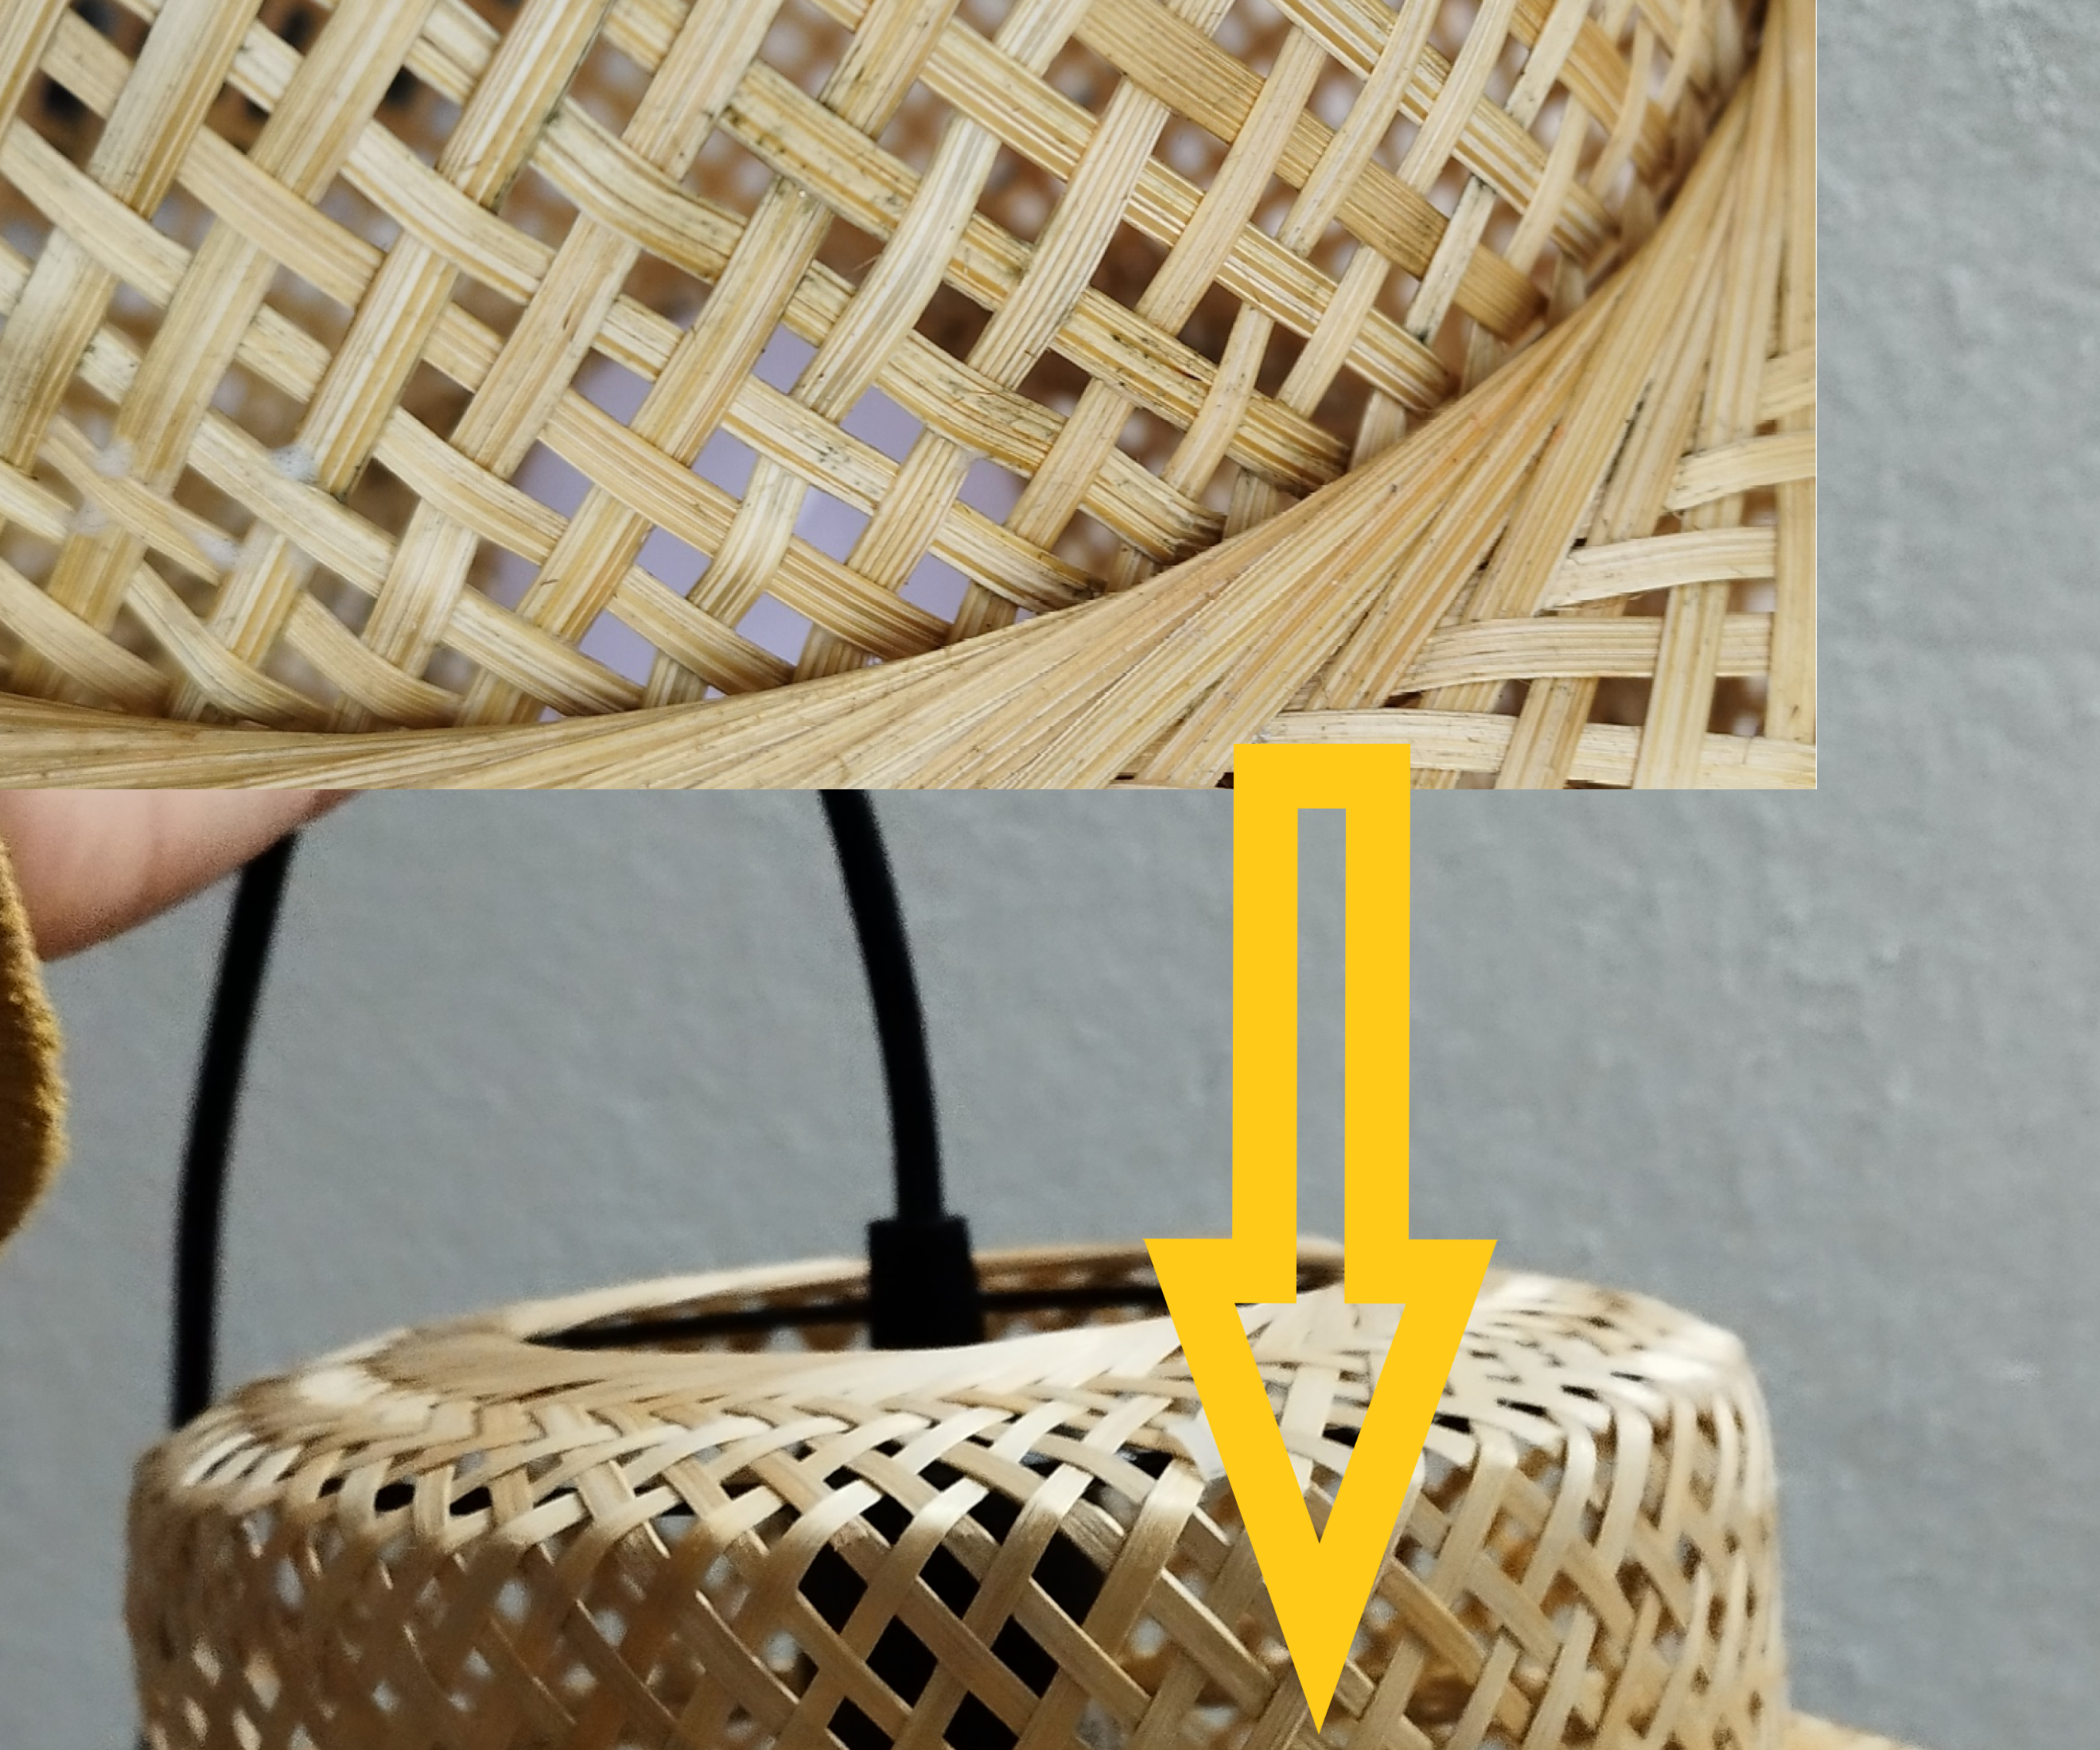 Bambu Lamp Repair in Less Than 30 Minutes